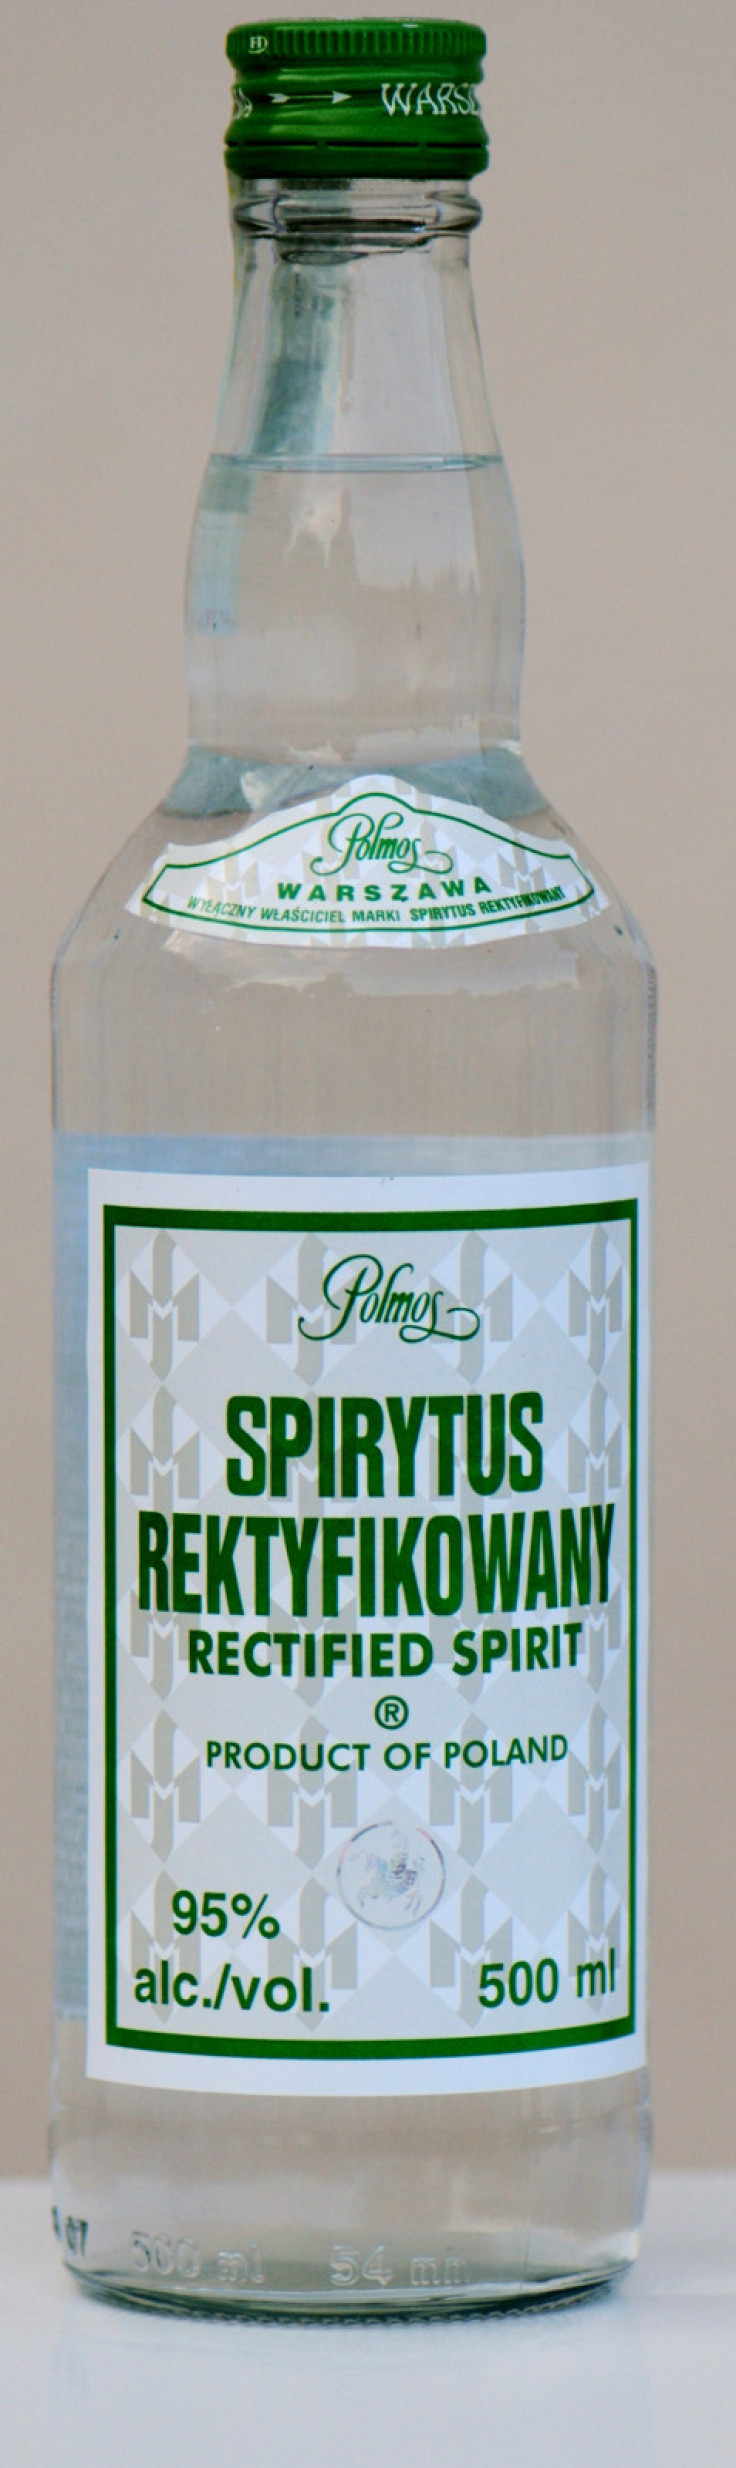 Polmos Spirytus Rektyfikowany - Polish 95 per cent proof spirit